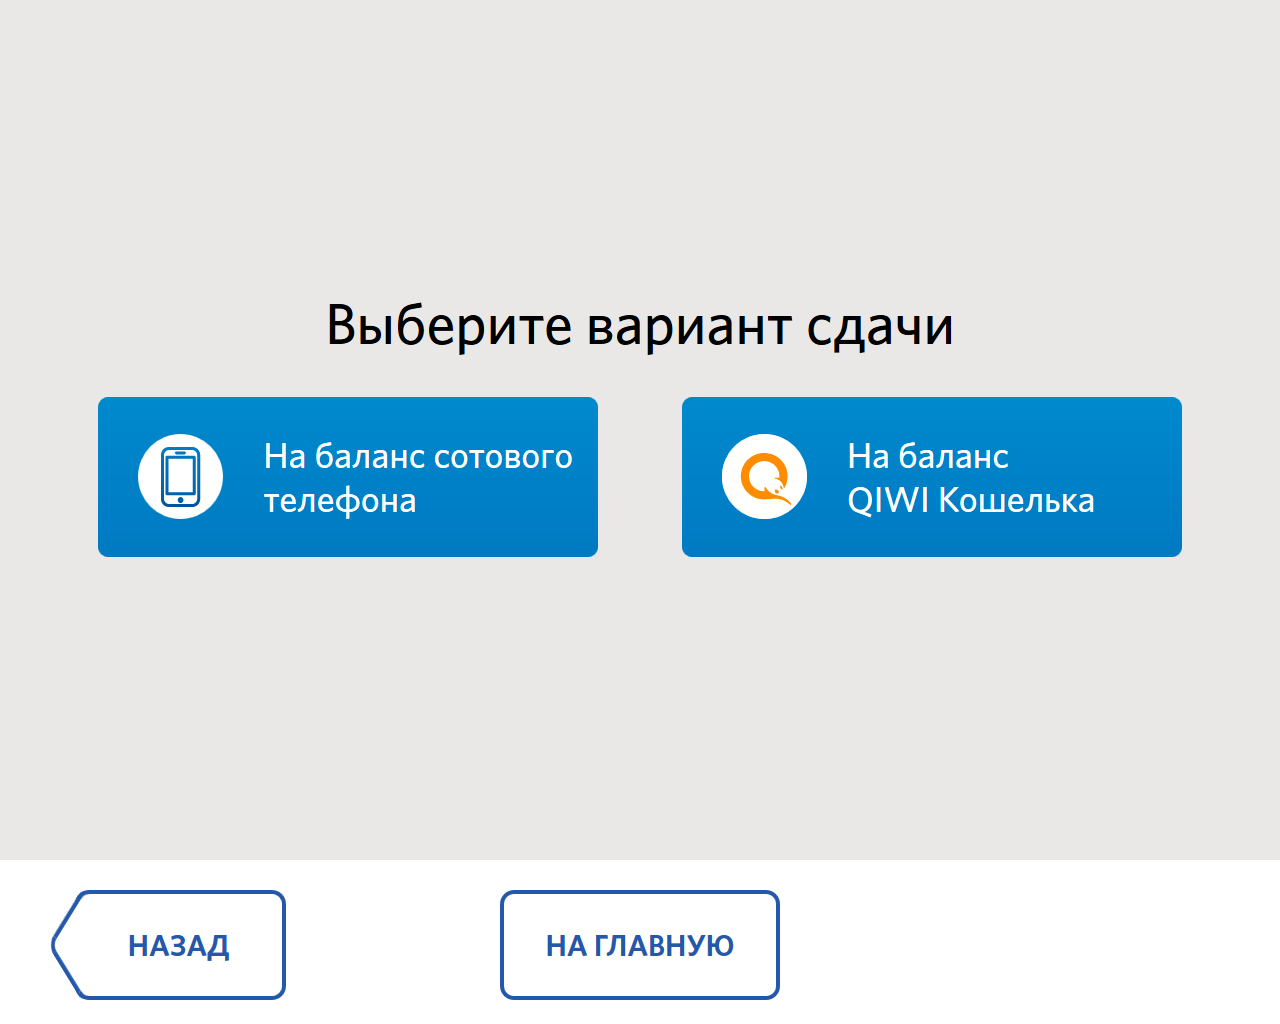 прием платежа для данного провайдера запрещен steam казахстан фото 3